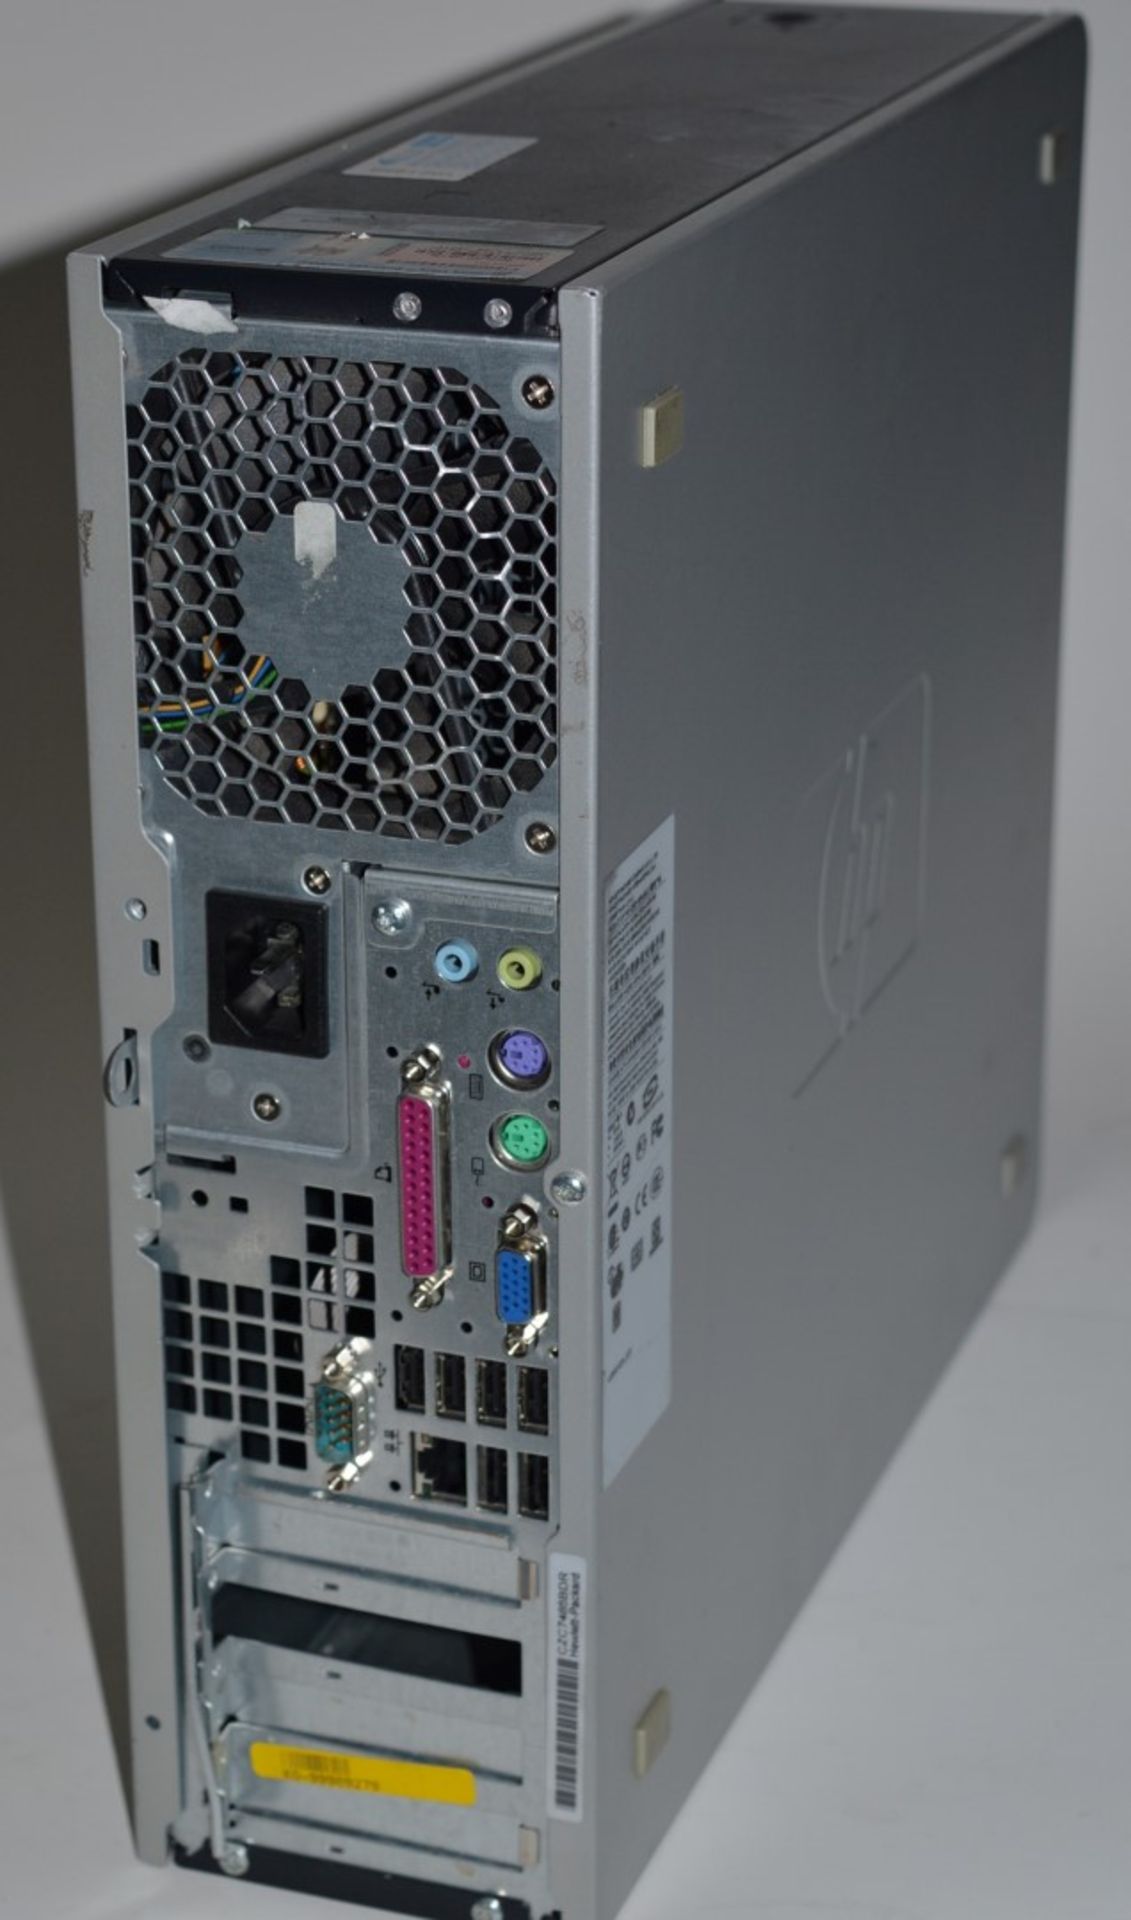 1 x Hewlett Packard DC7800 Desktop Computer - Features an Intel Core 2 2.66ghz Processor and 4gb Ram - Image 2 of 2